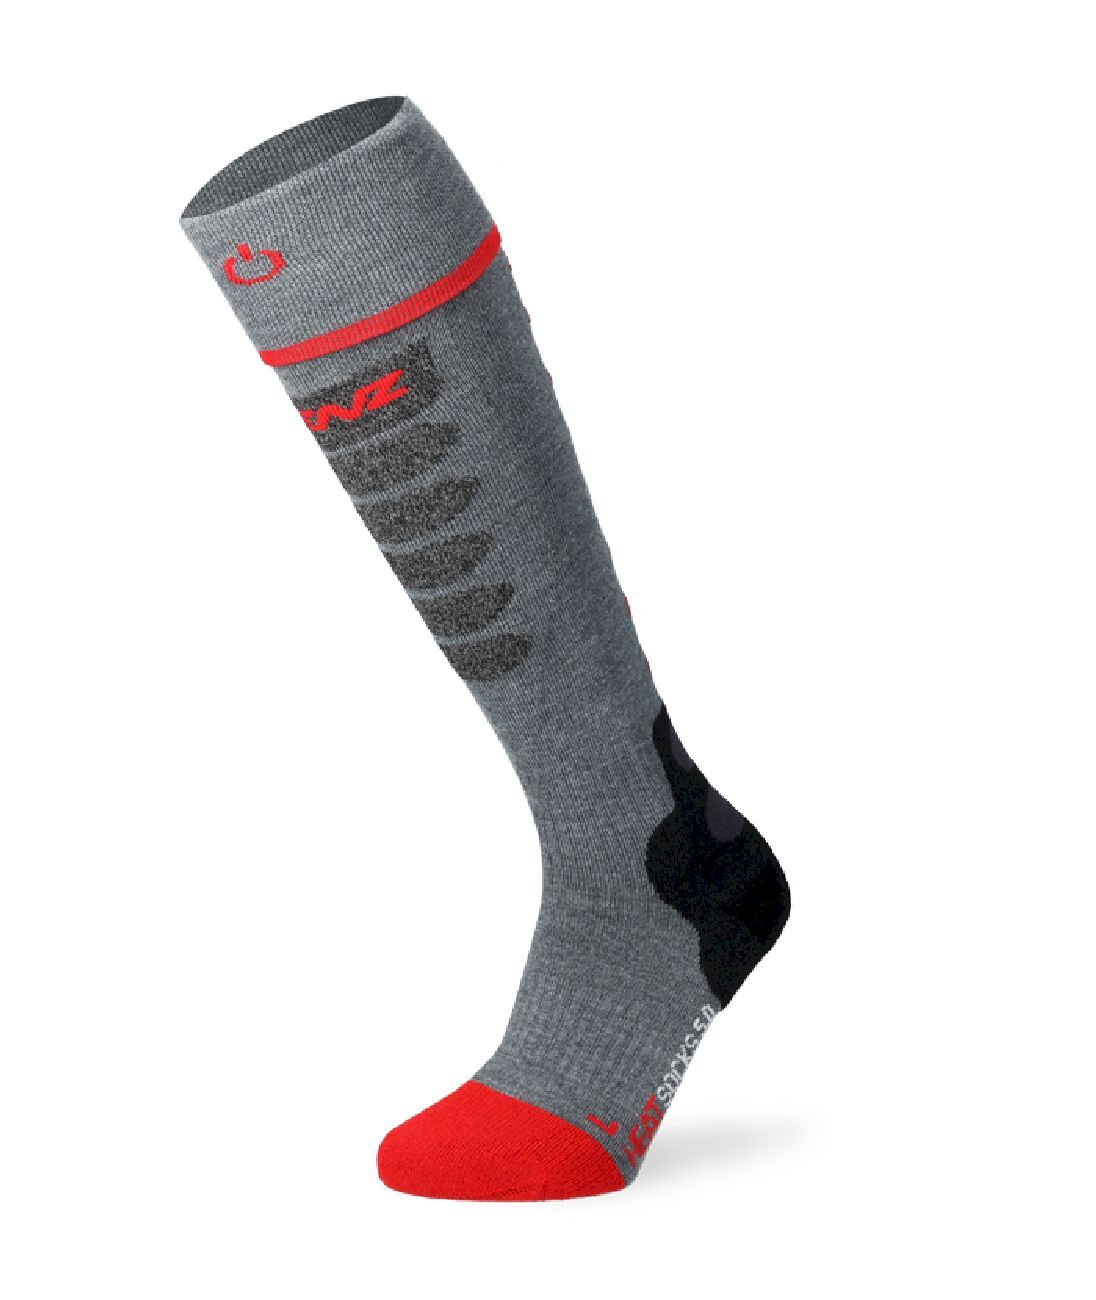 Lenz Heat Sock 5.1 Slim Fit - Ski socks